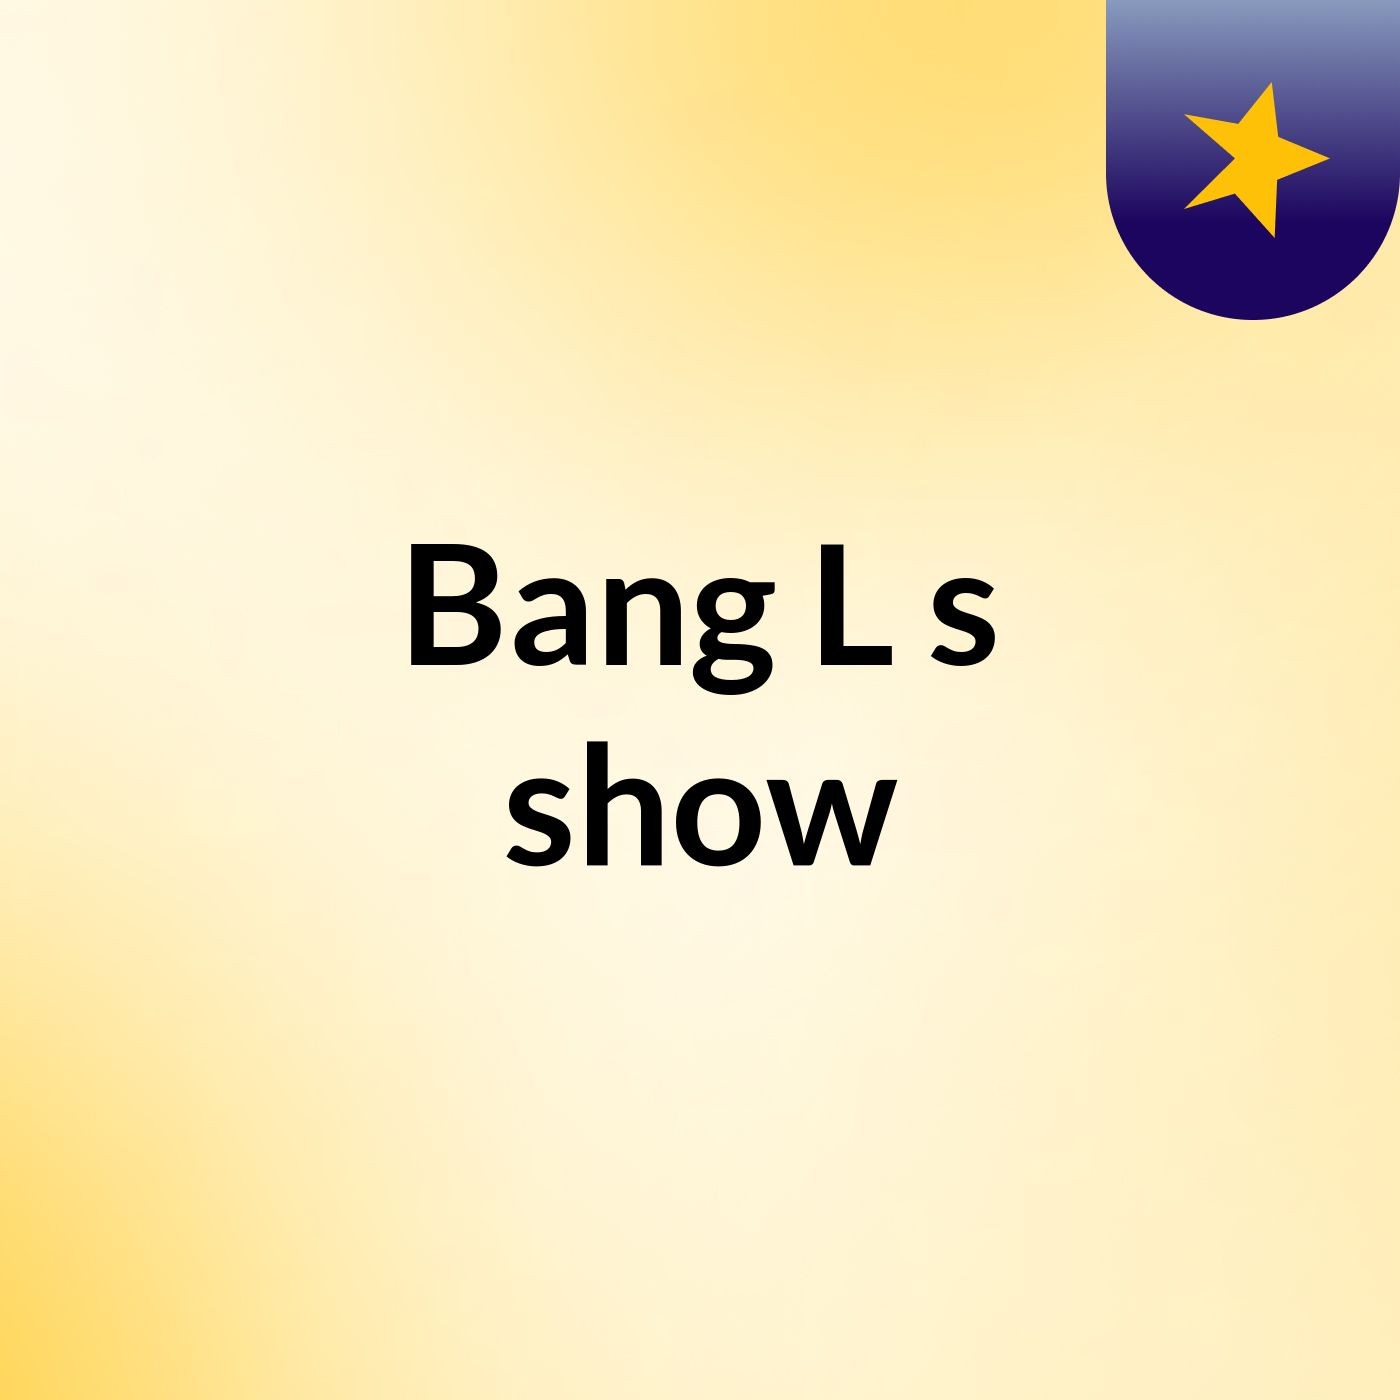 Bang L's show